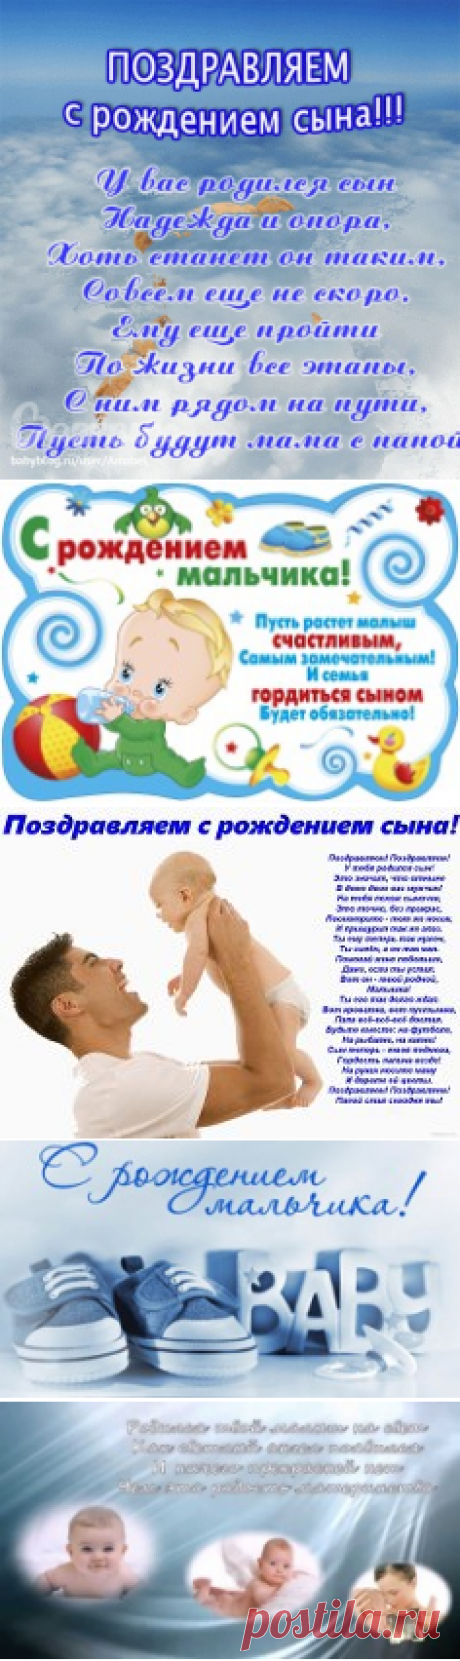 поздравления с рождением сына - 106 тыс. картинок. Поиск Mail.Ru